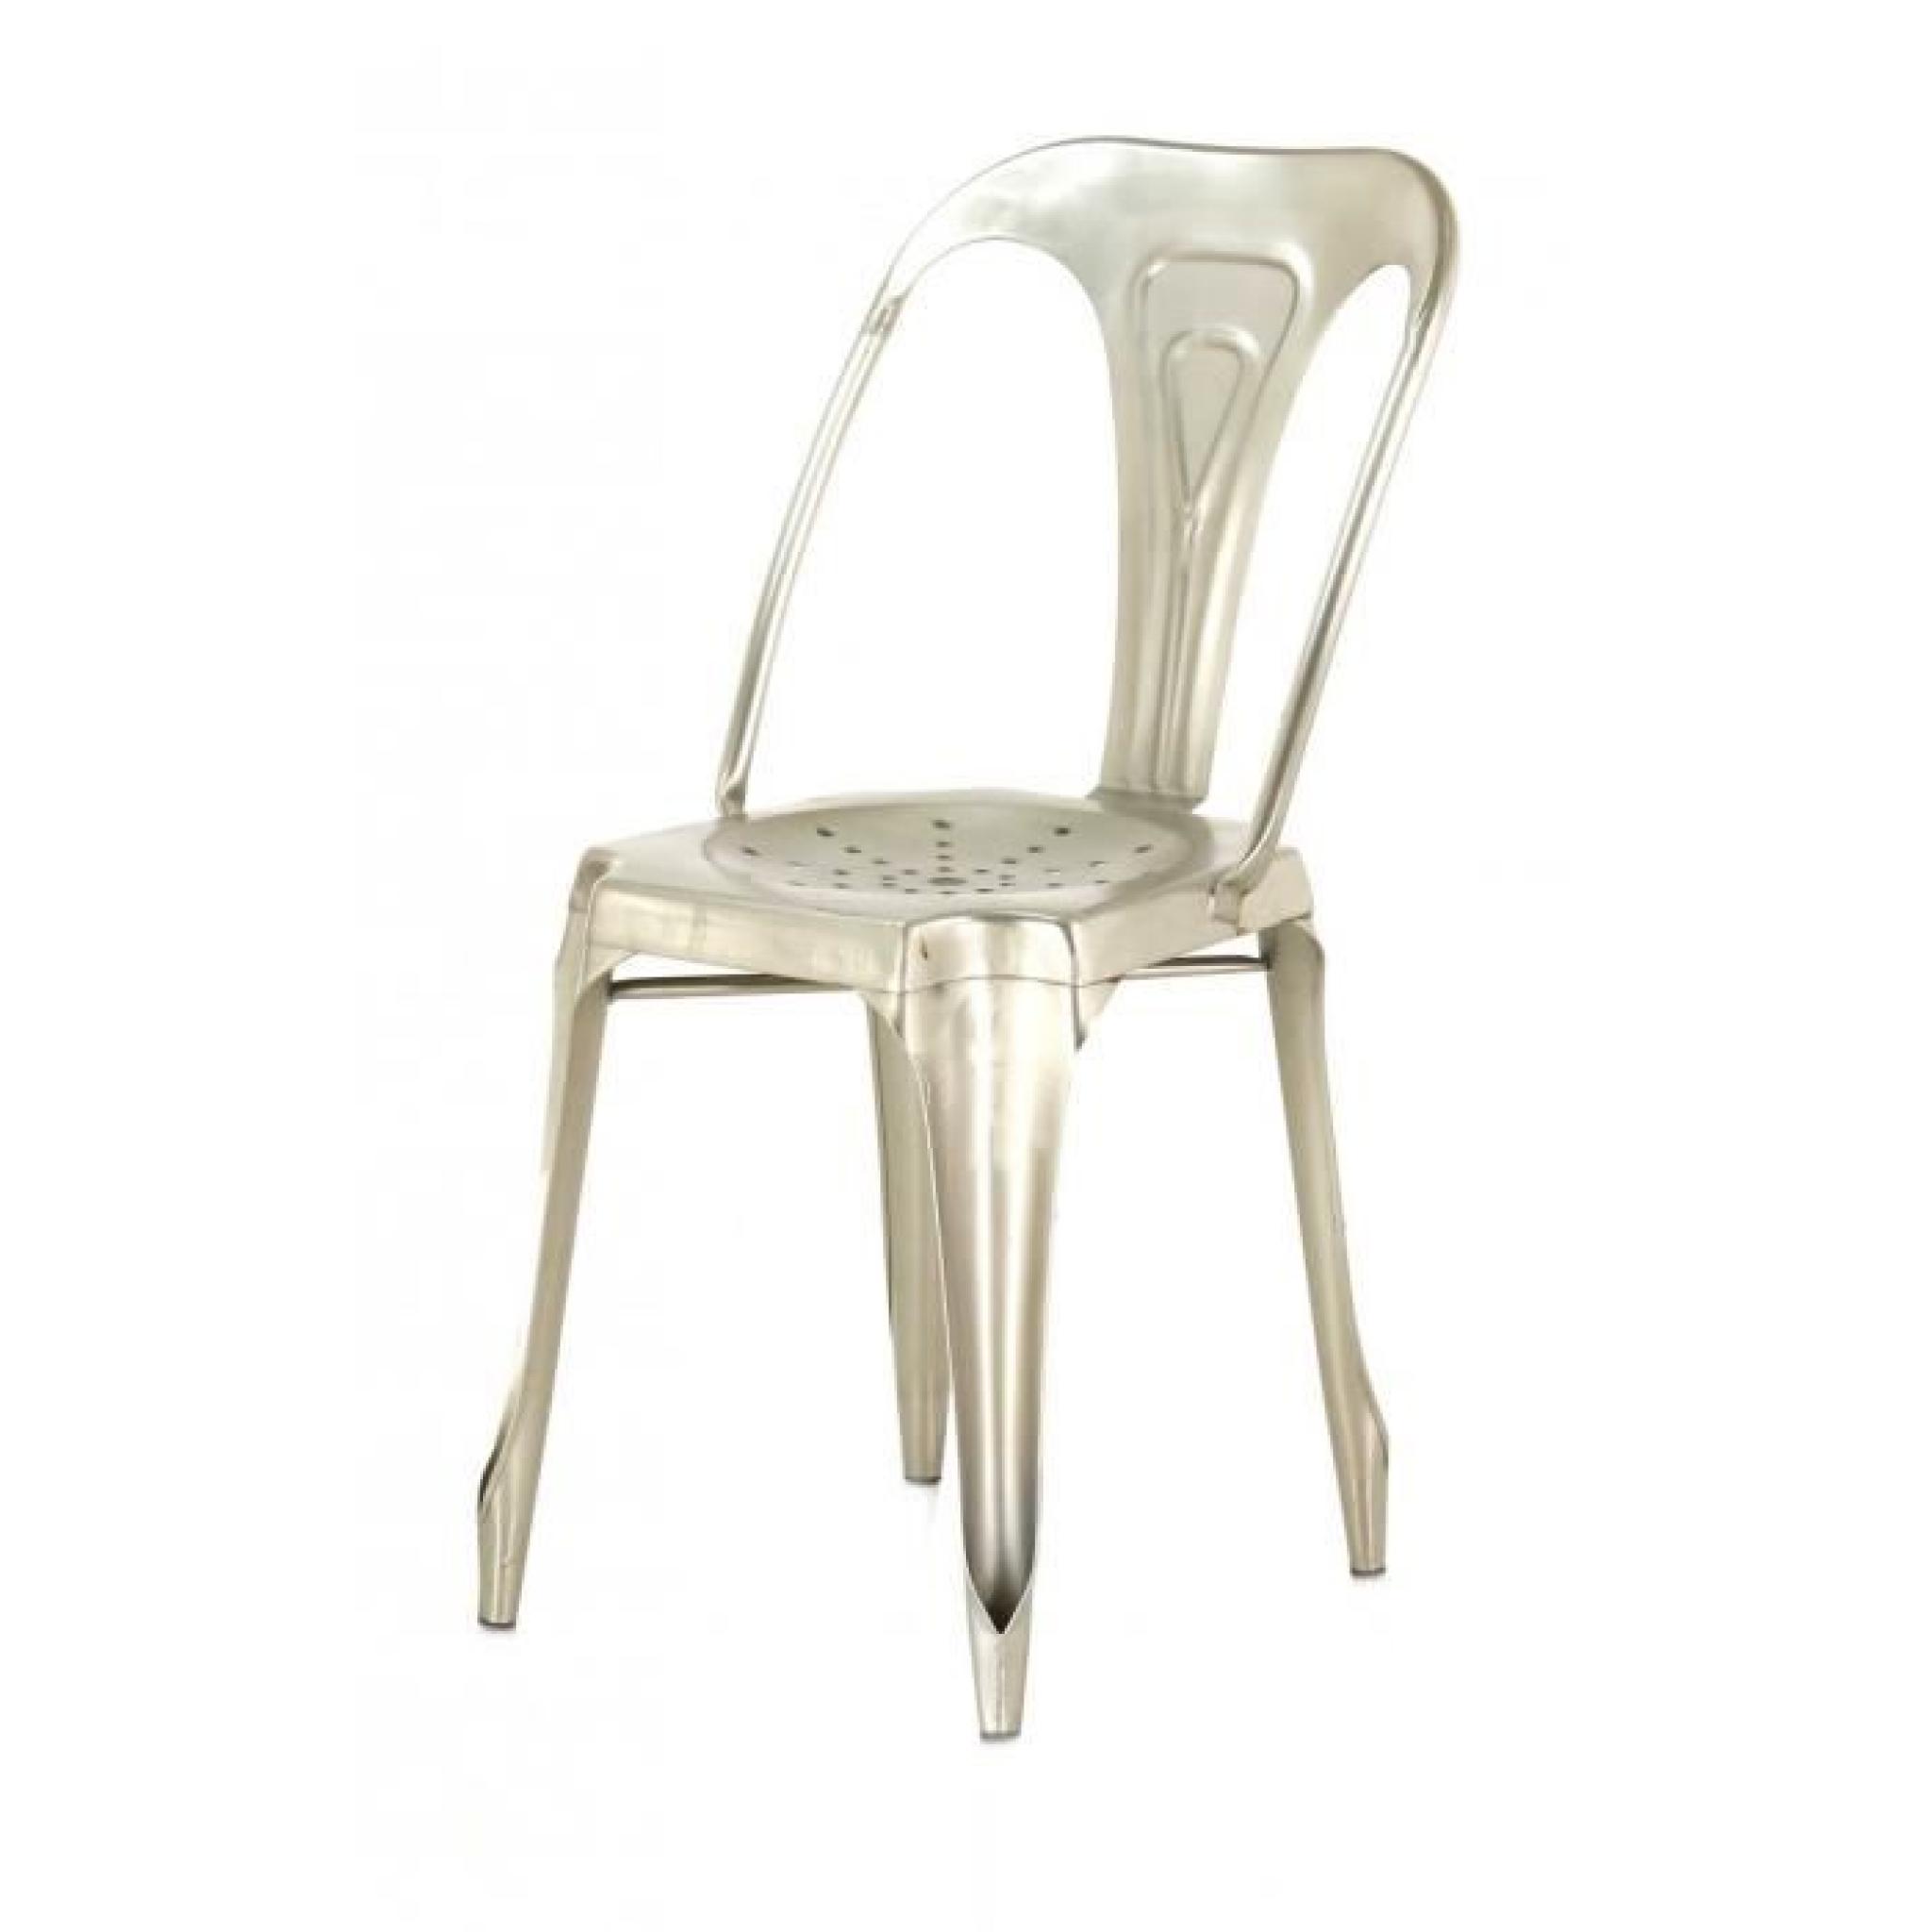 4x Chaise industrielle métal argenté Indus - Inwood pas cher